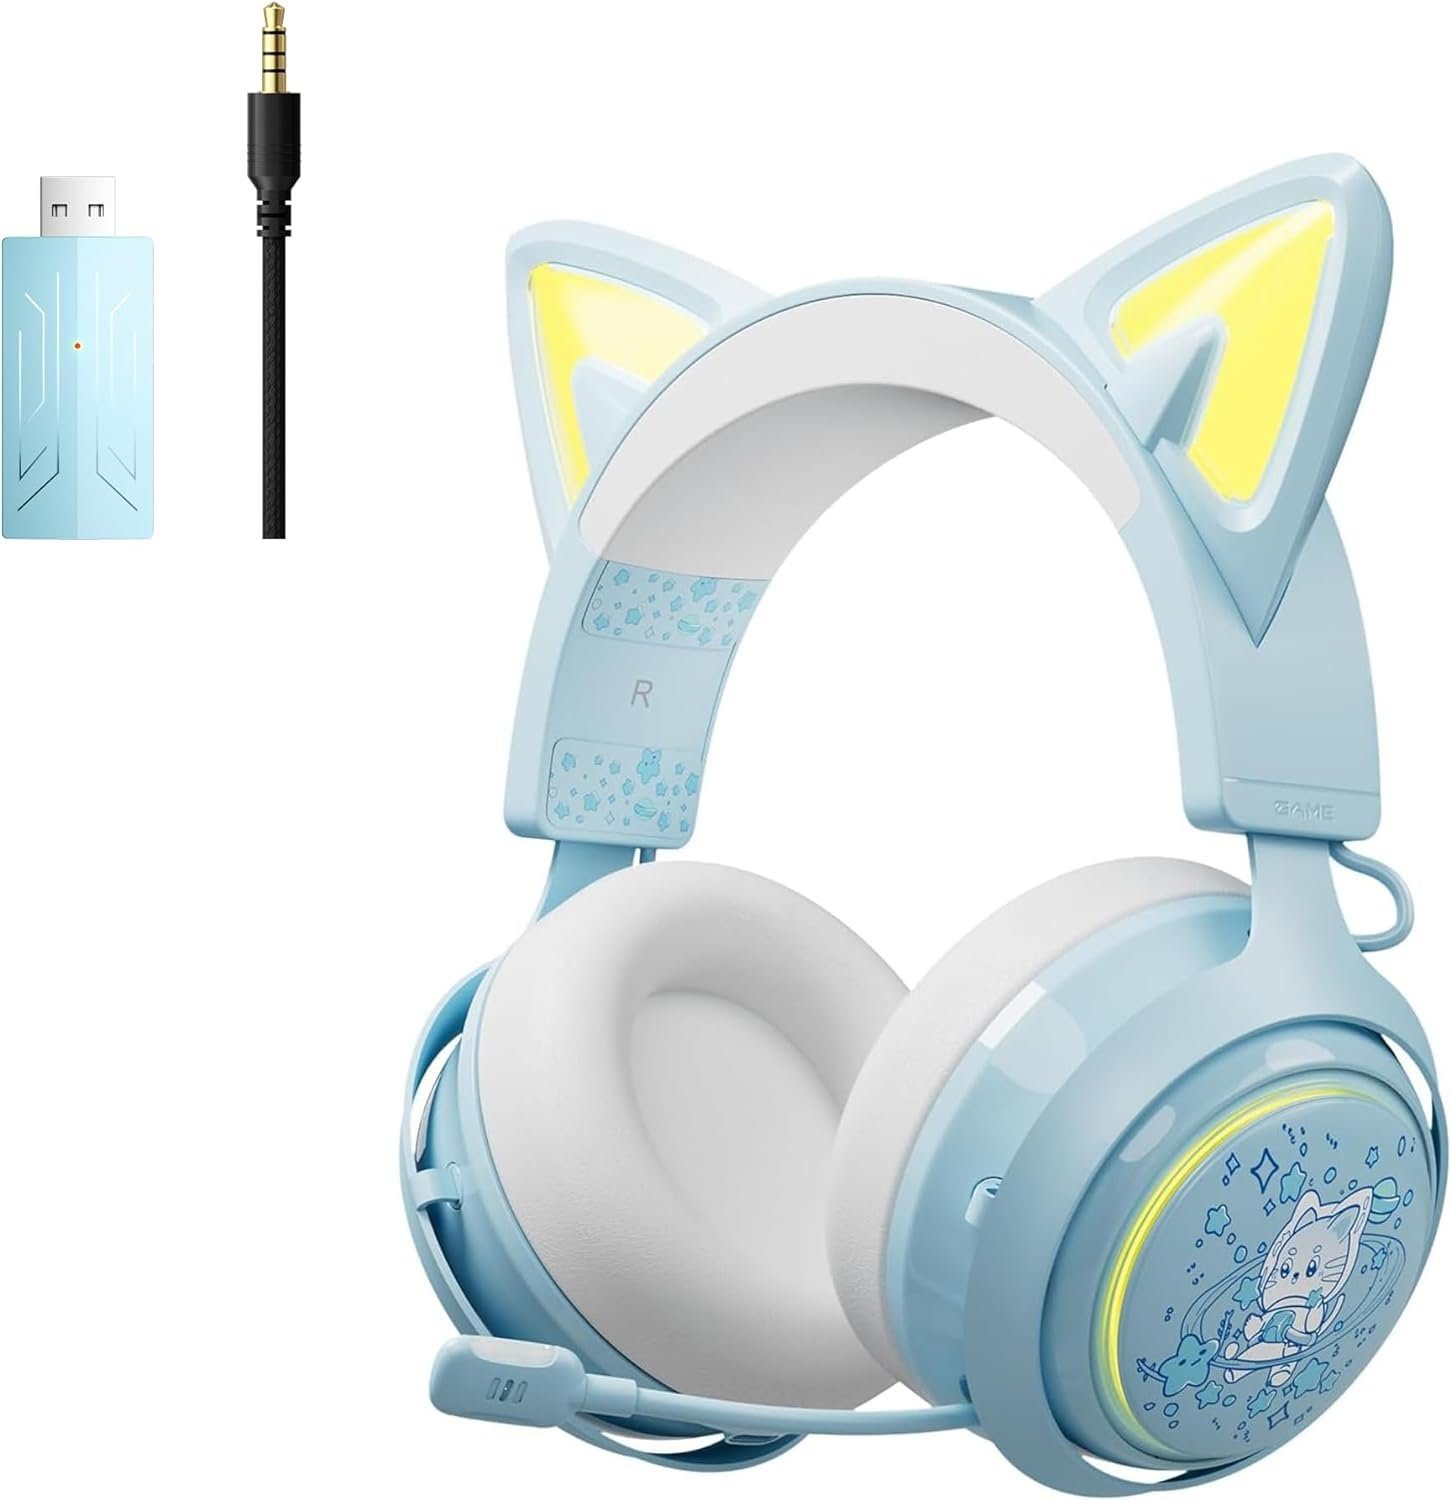 Attraktive Neuheiten Somikon GS510Pro "Drahtlose für erstklassige , Rauschunterdrückungsmikrofon PS5, PS4, für Gaming-Headset Cat-Ear-Kopfhörer mit Kommunikation. einziehbares (Beeindruckende RGB-Beleuchtung PC) 2.4G/Bluetooth und ein